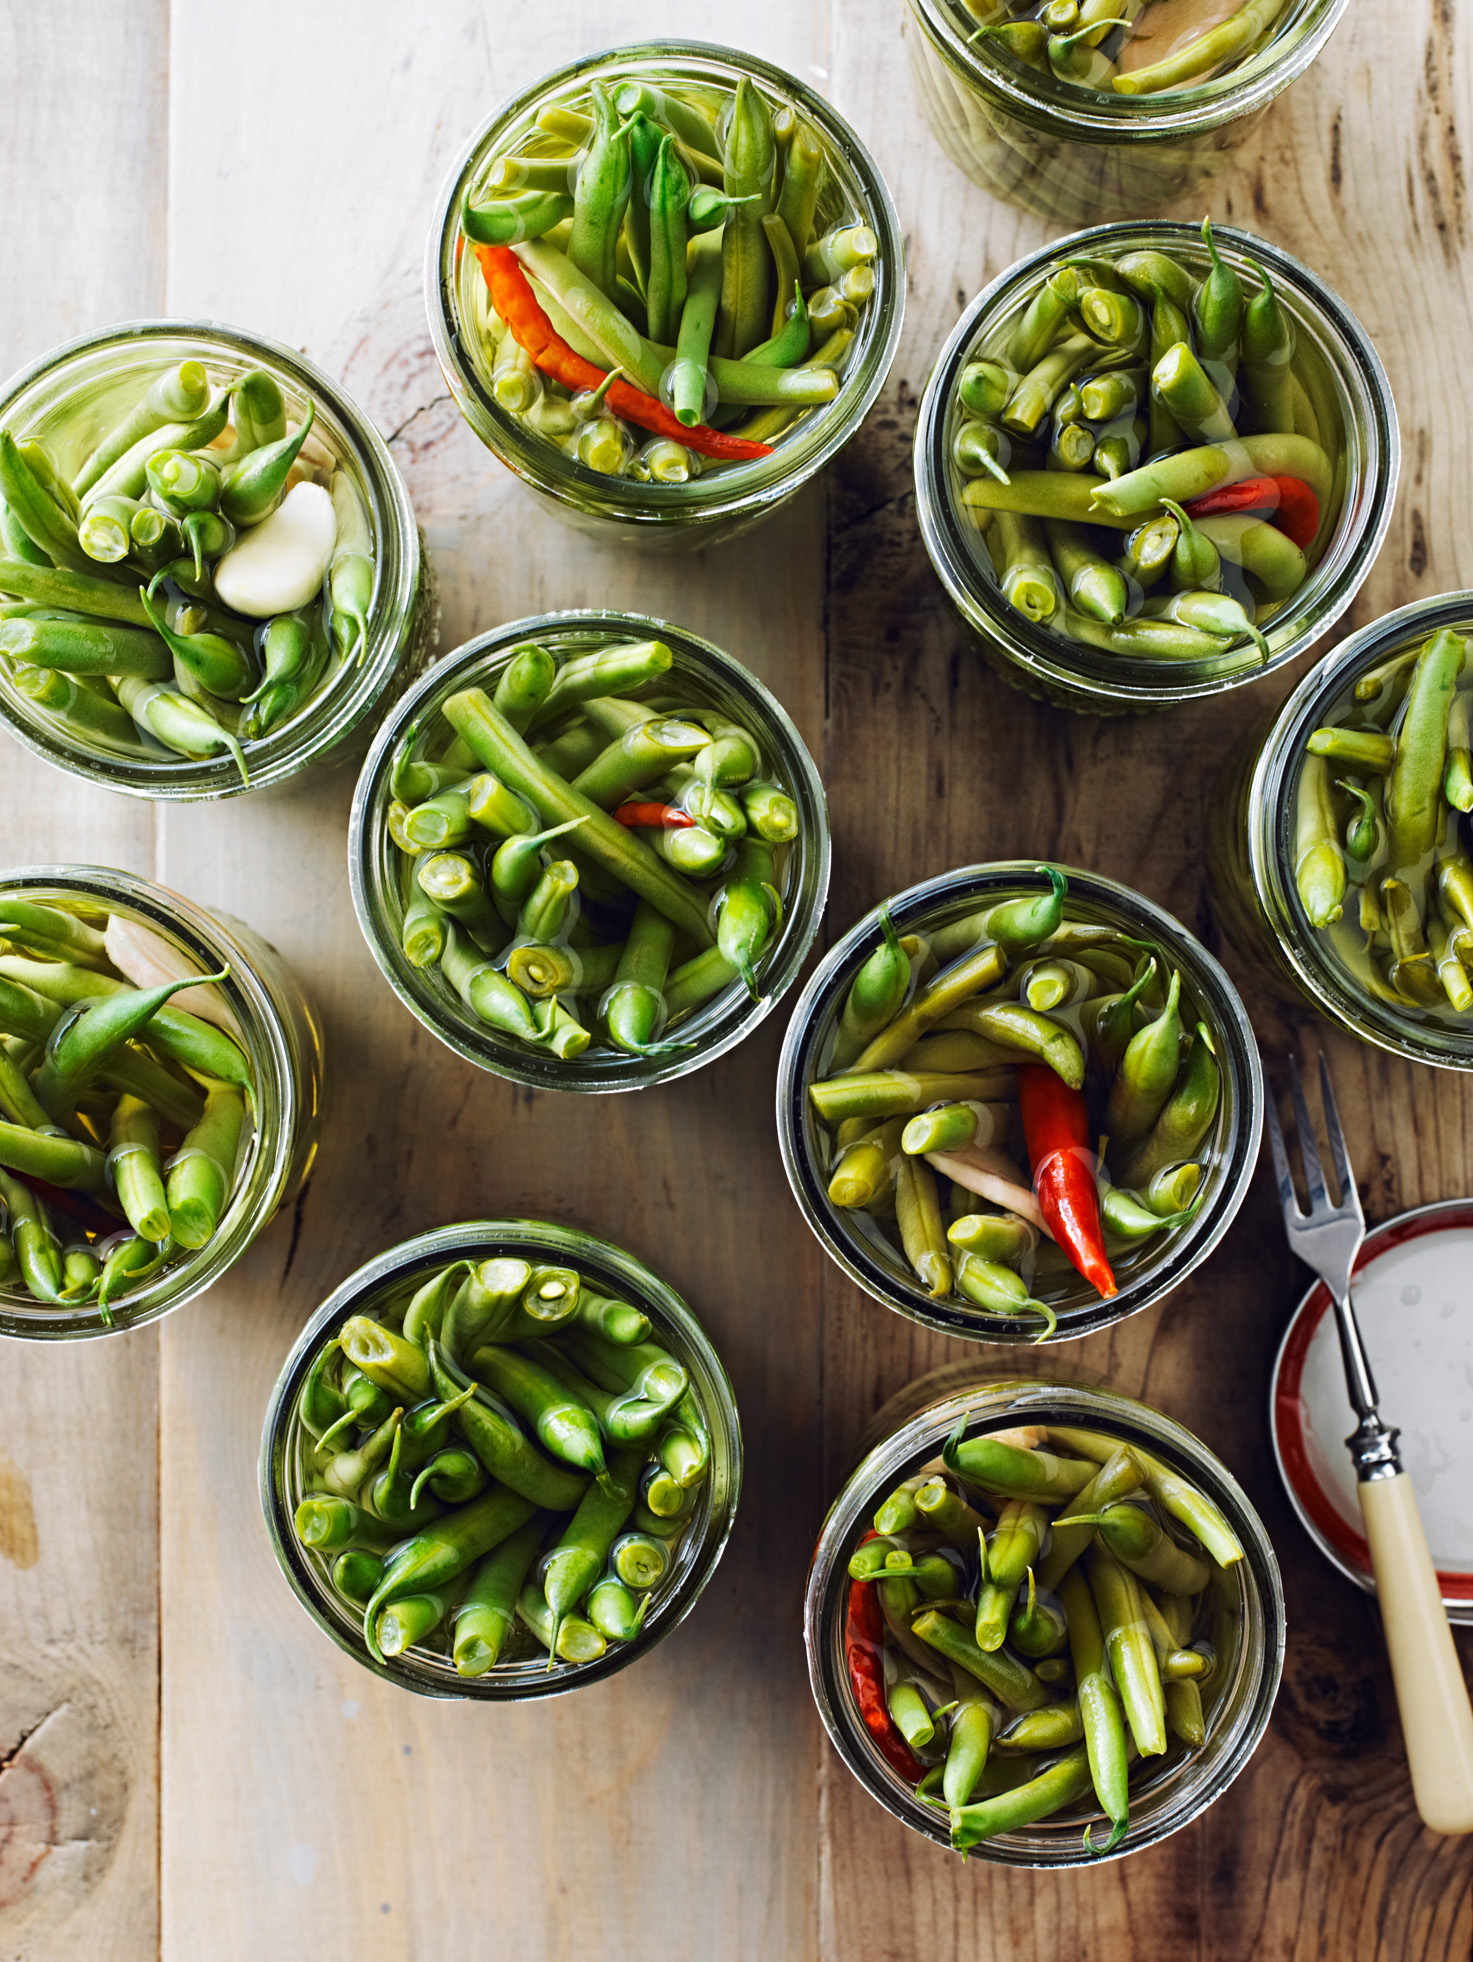 22 Pickles & Condiments Recipes